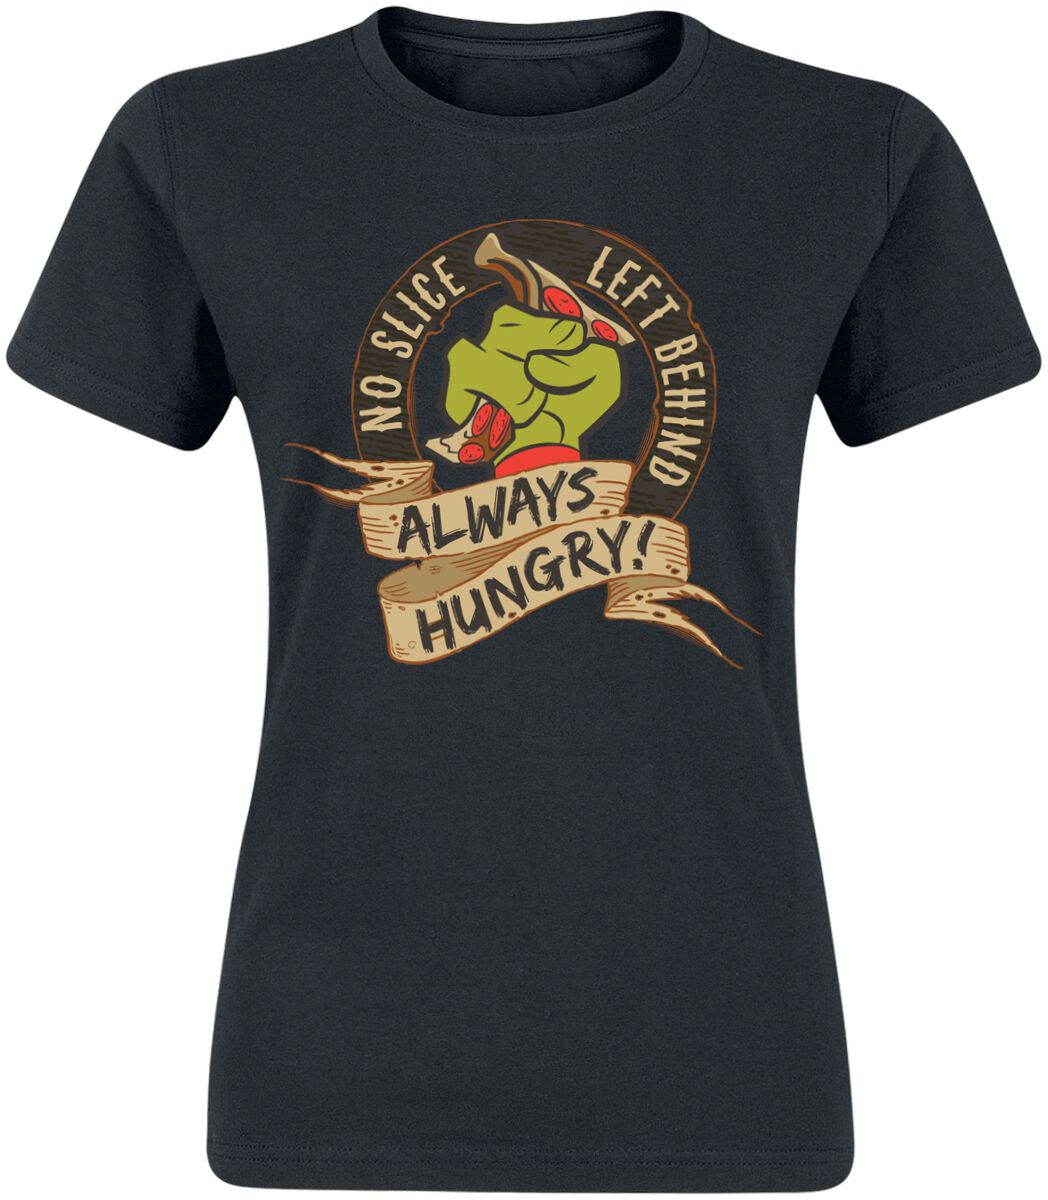 T-Shirt Manches courtes de Les Tortues Ninja - No Slice Left Behind - Always Hungry! - S à XXL - pou